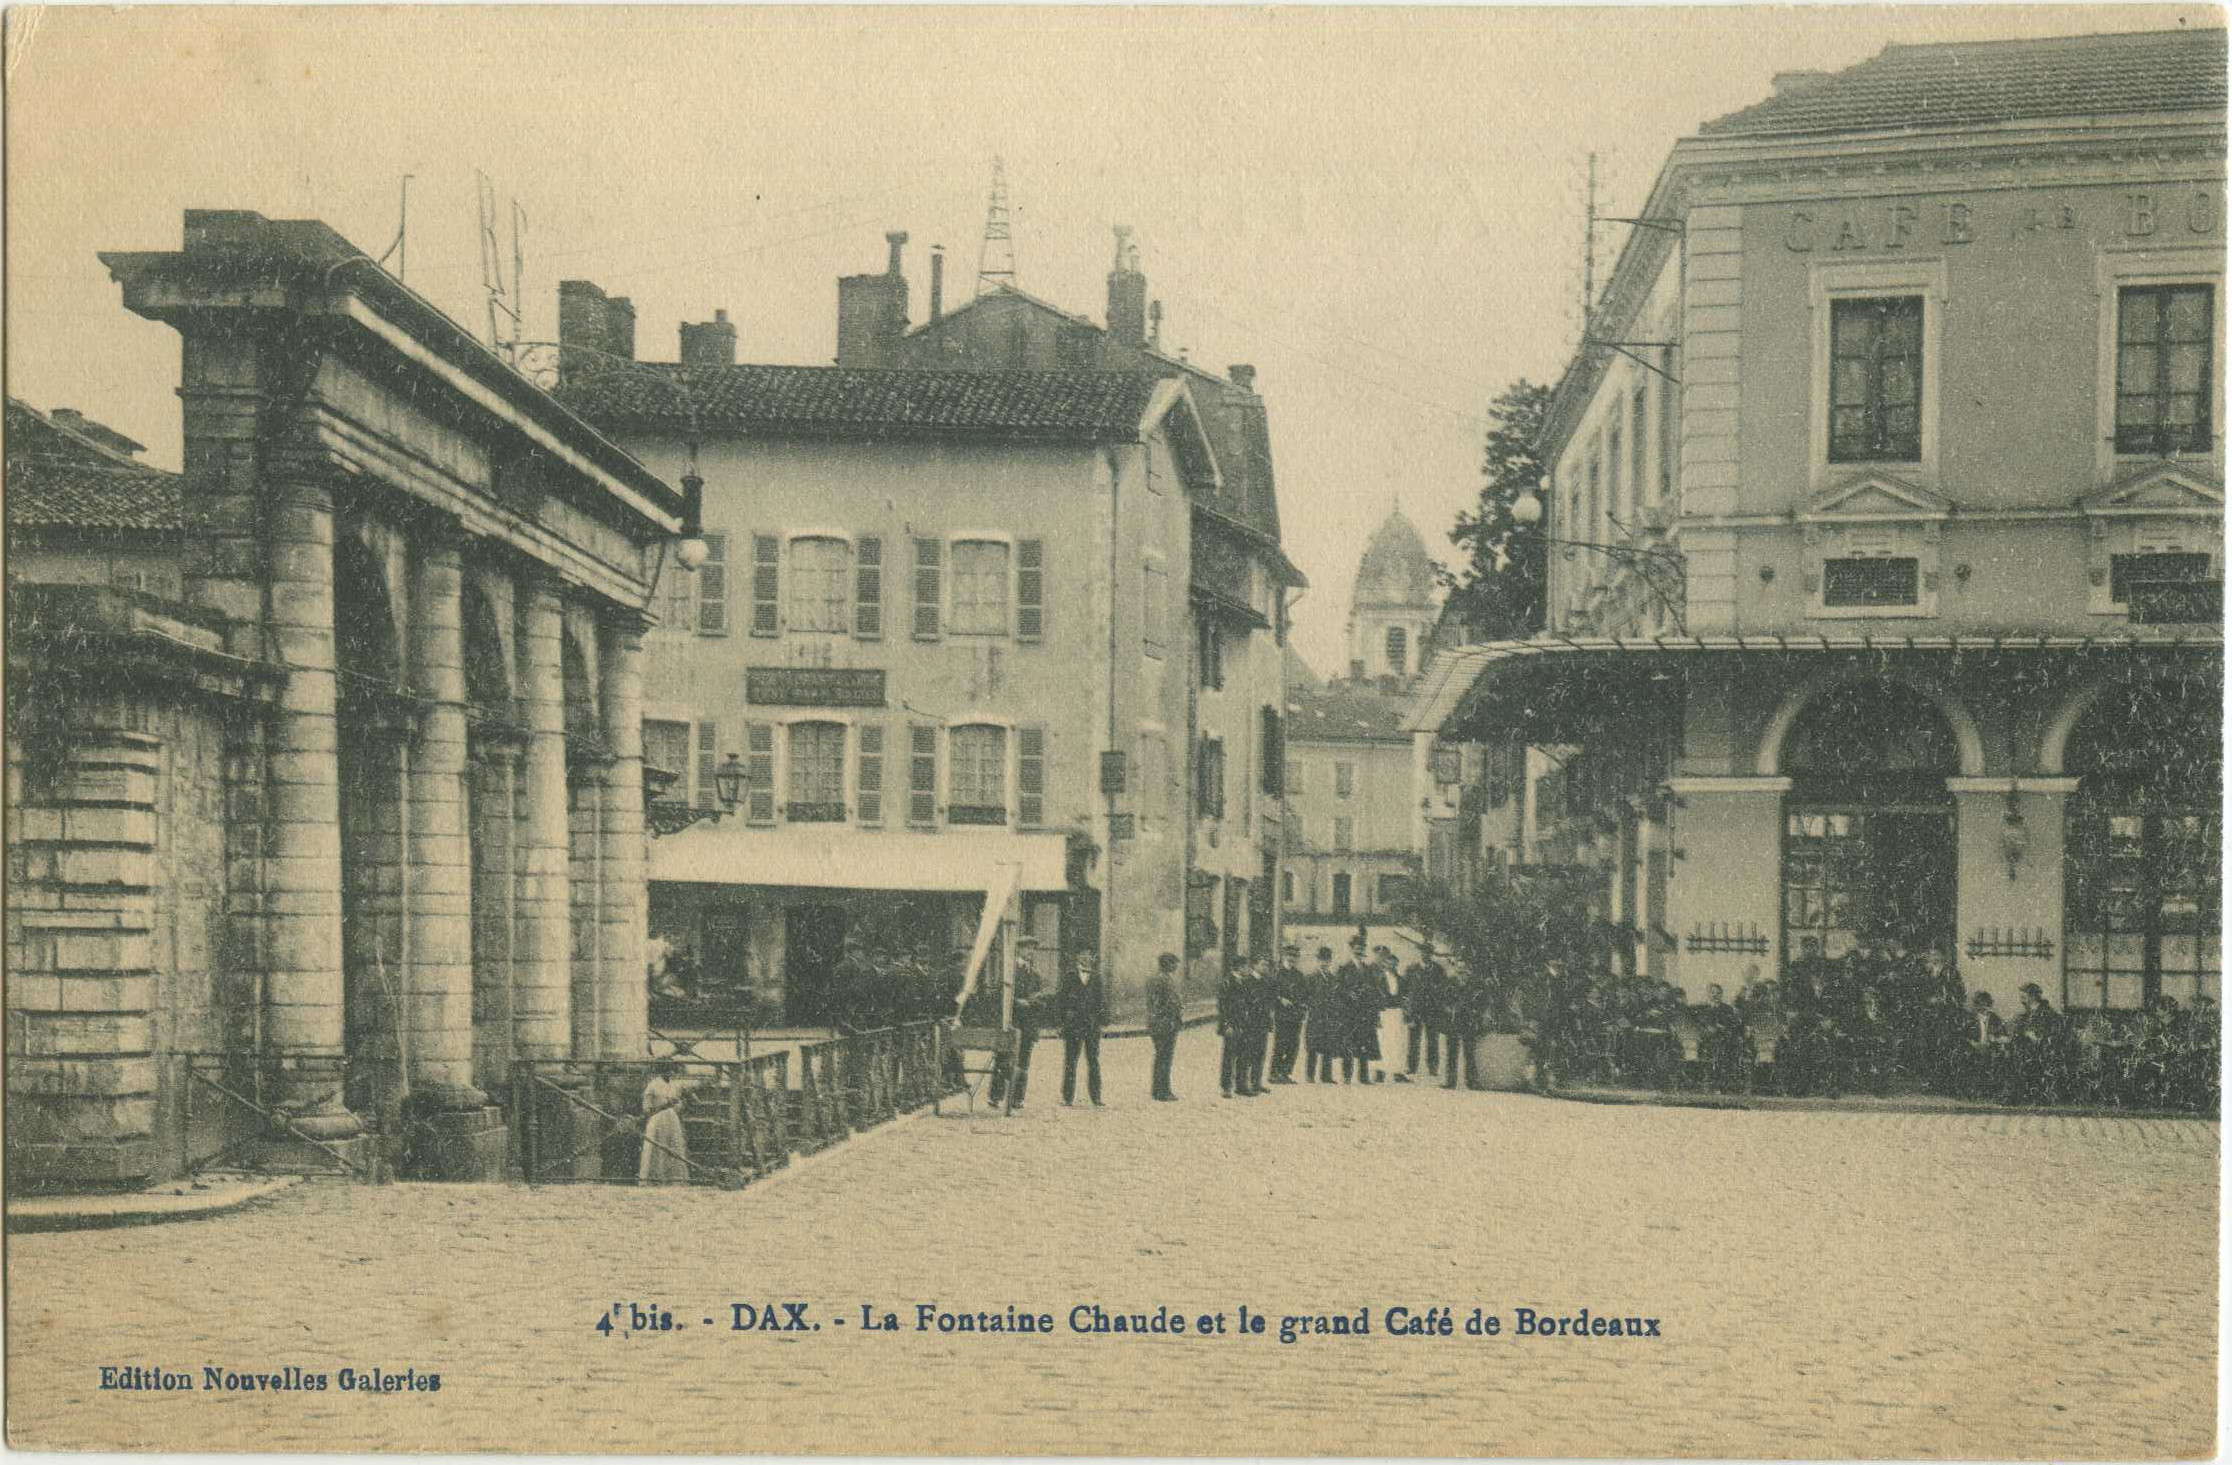 Dax - La Fontaine Chaude et le grand Café de Bordeaux